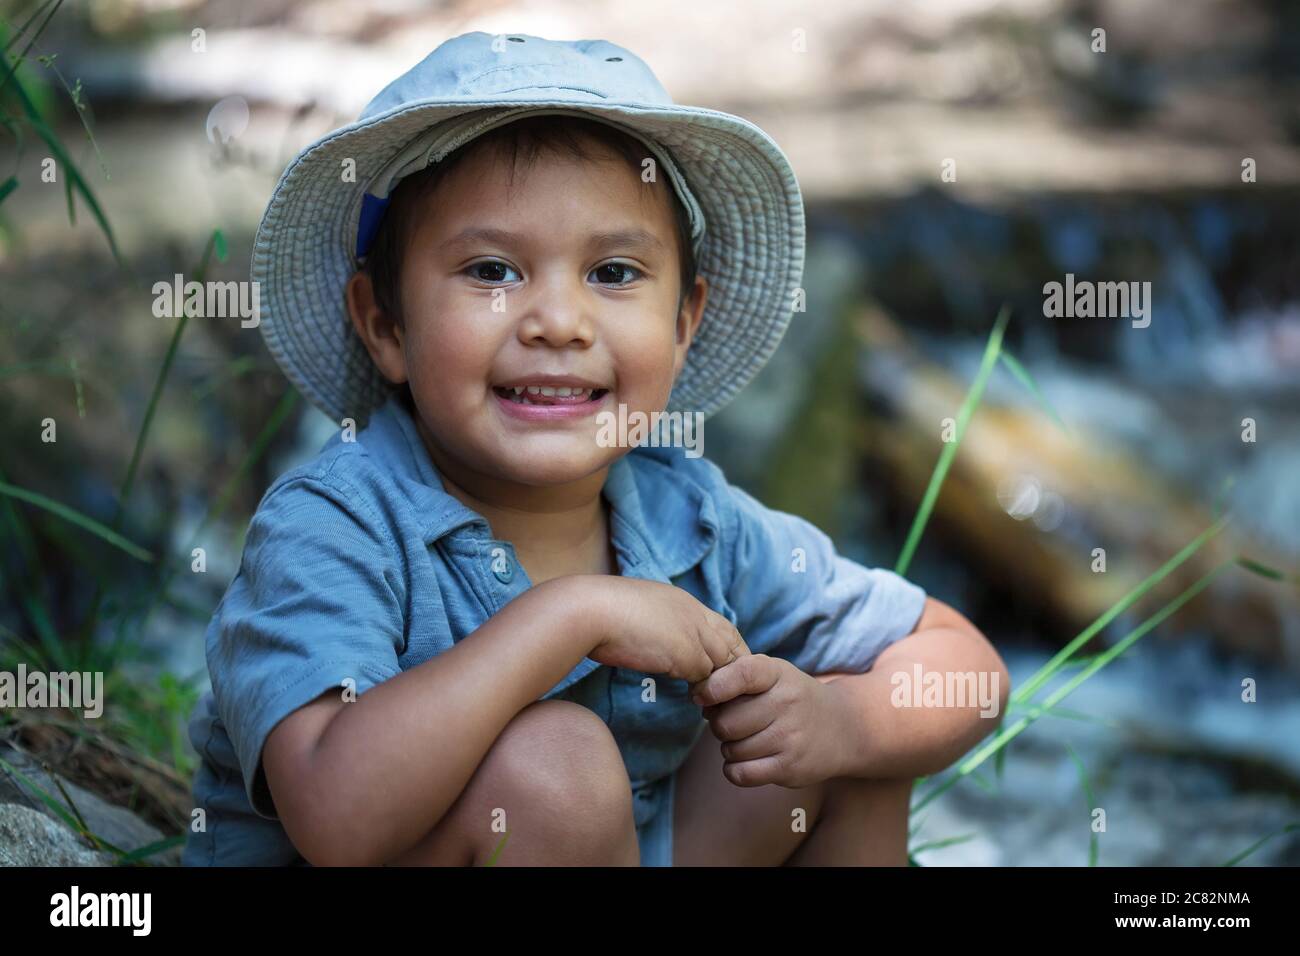 Un niño pequeño con su sombrero de pesca, sentado junto al borde del río durante el verano. Foto de stock